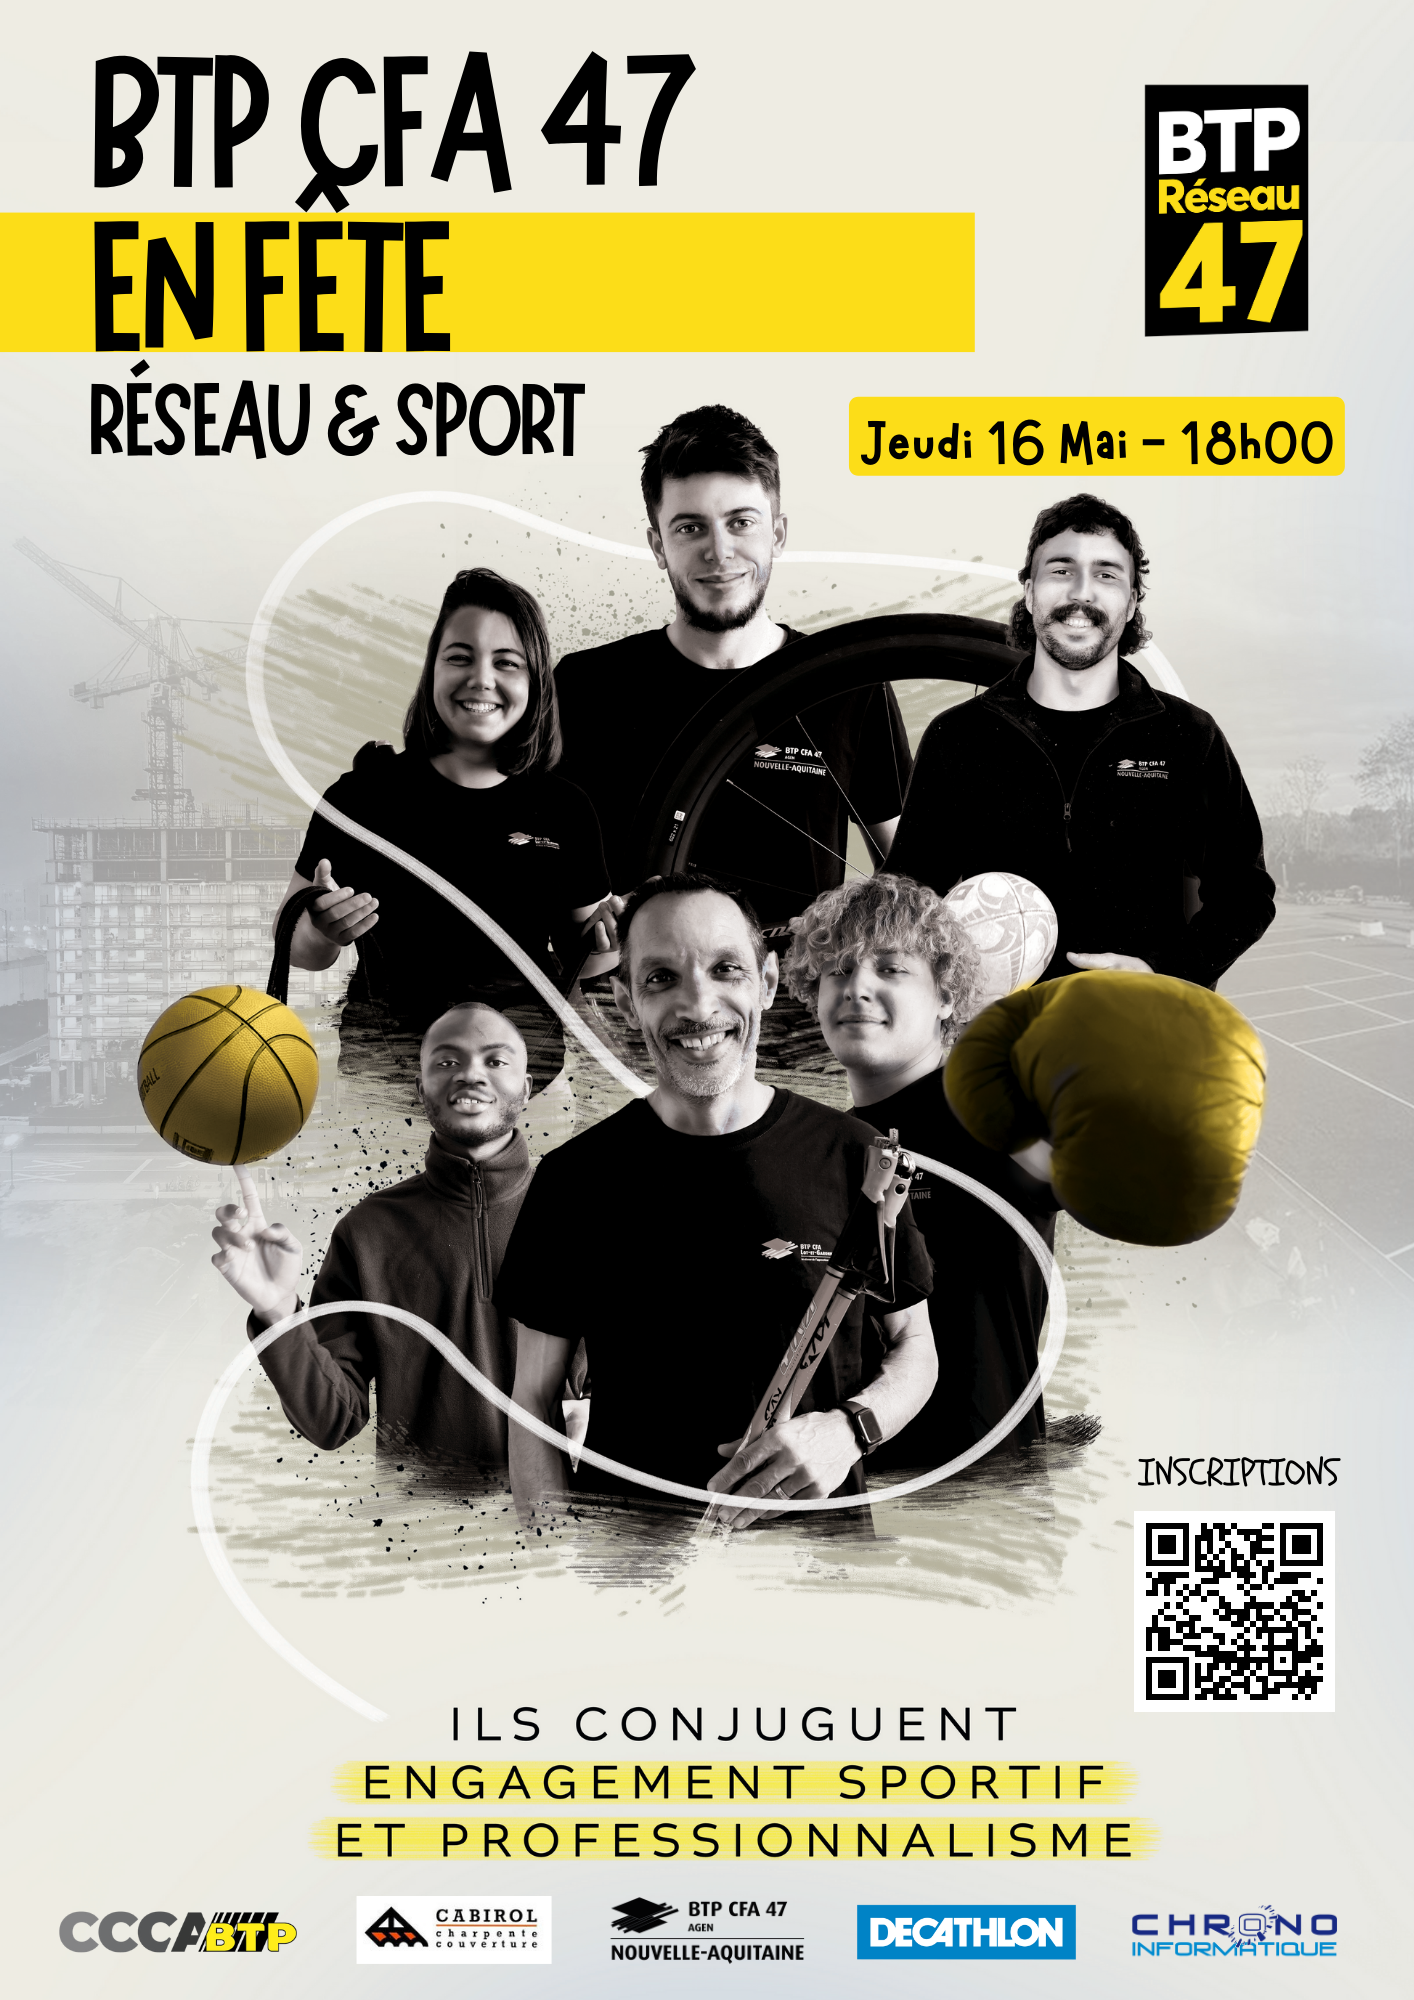 Image de couverture de la page BTP CFA 47 Fête son réseau et le sport